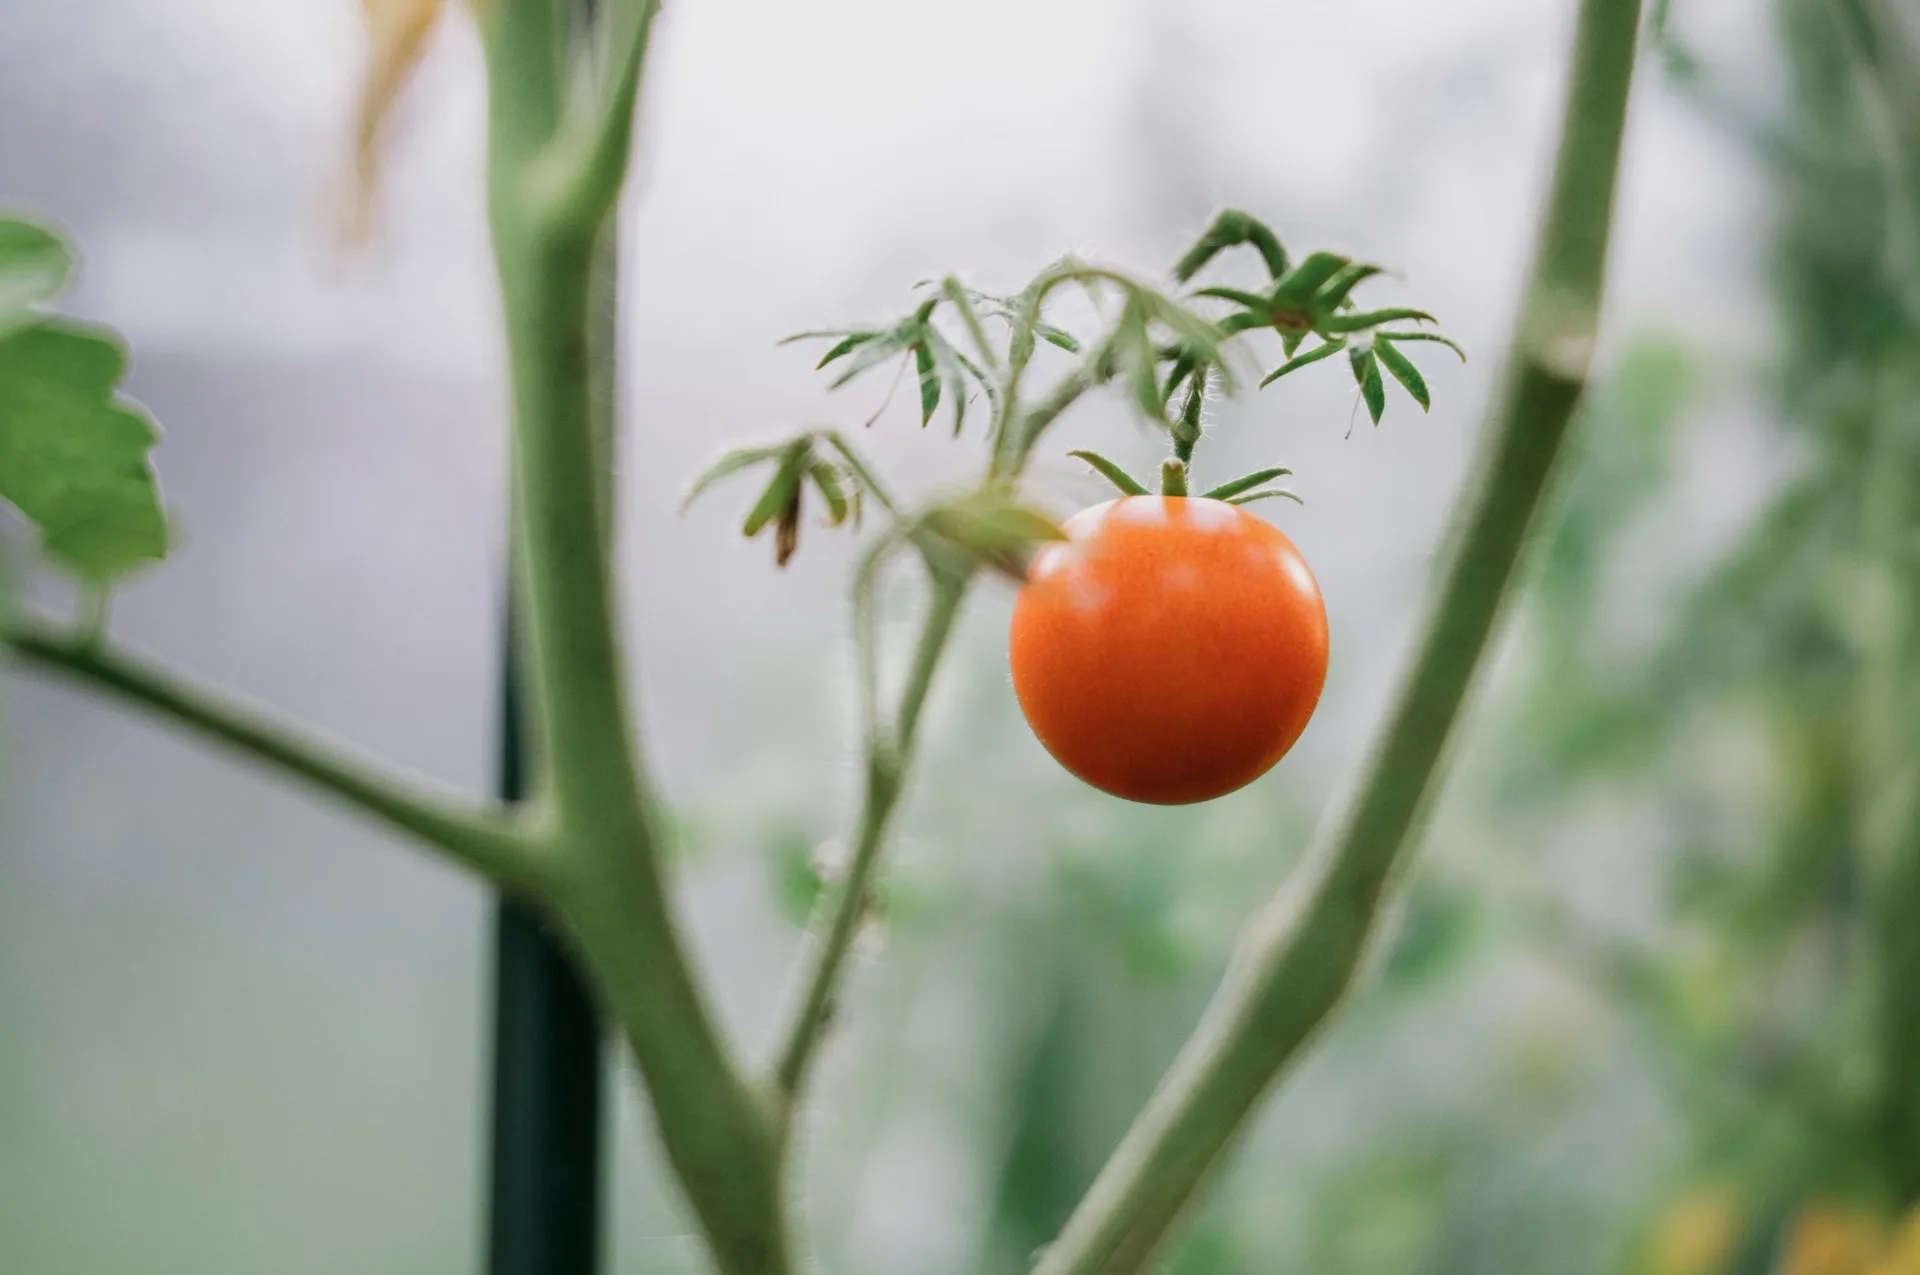 Γιατί δεν πρέπει να φυτεύεις αγγούρια και ντομάτες μαζί στον κήπο